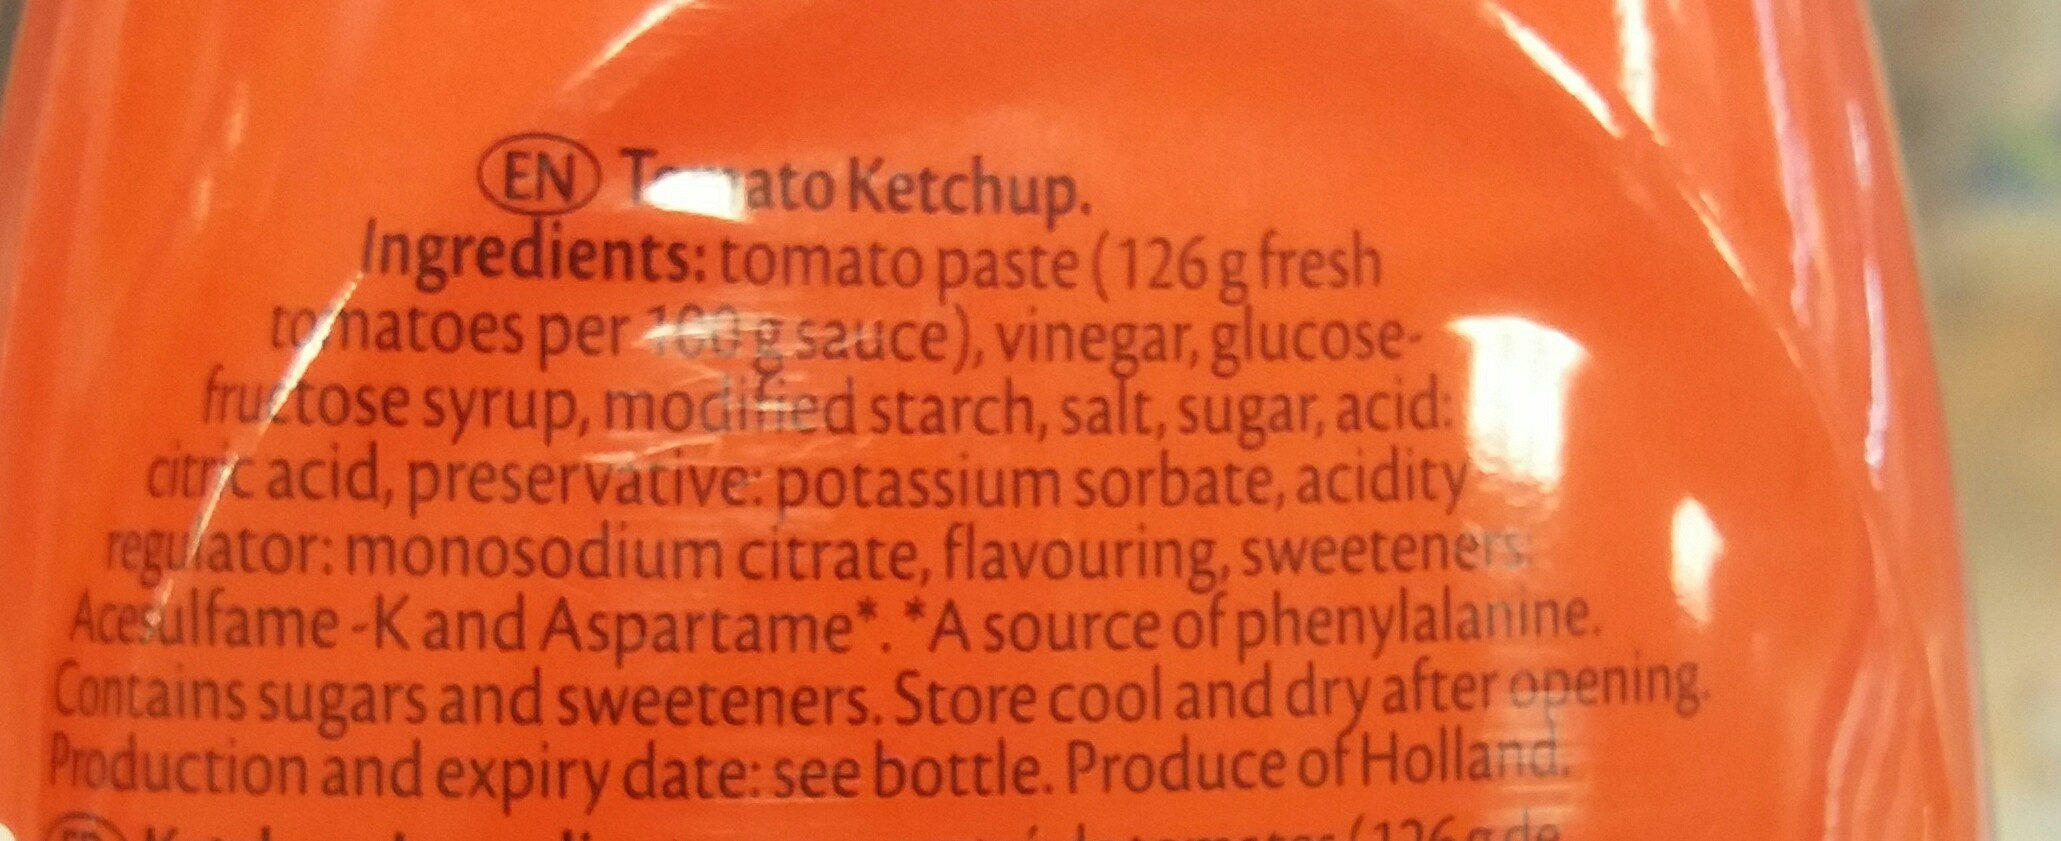 tomato ketchup - Thành phần - en